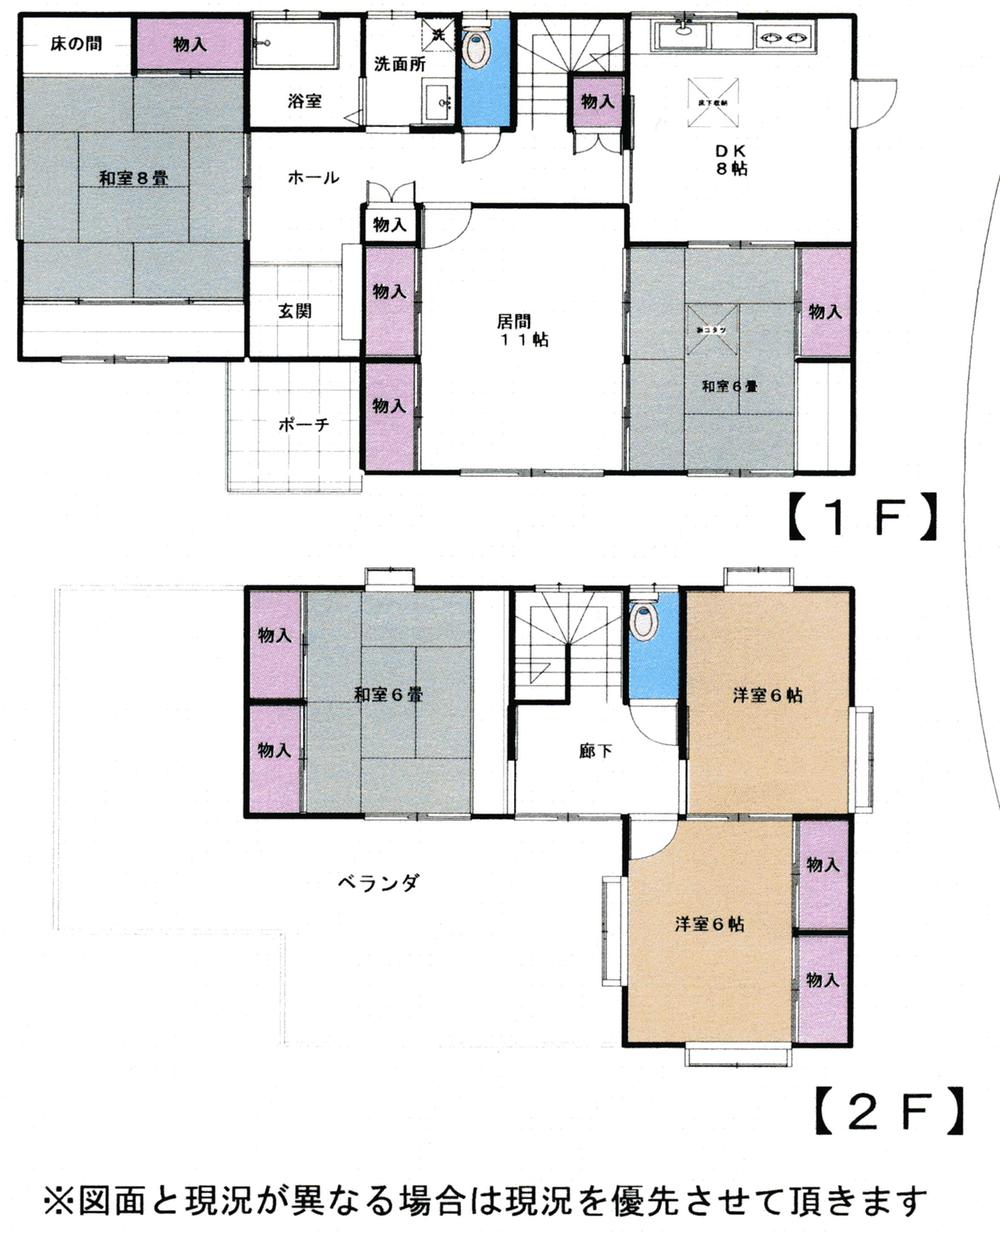 Floor plan. 27,800,000 yen, 6DK, Land area 274 sq m , Building area 144.17 sq m